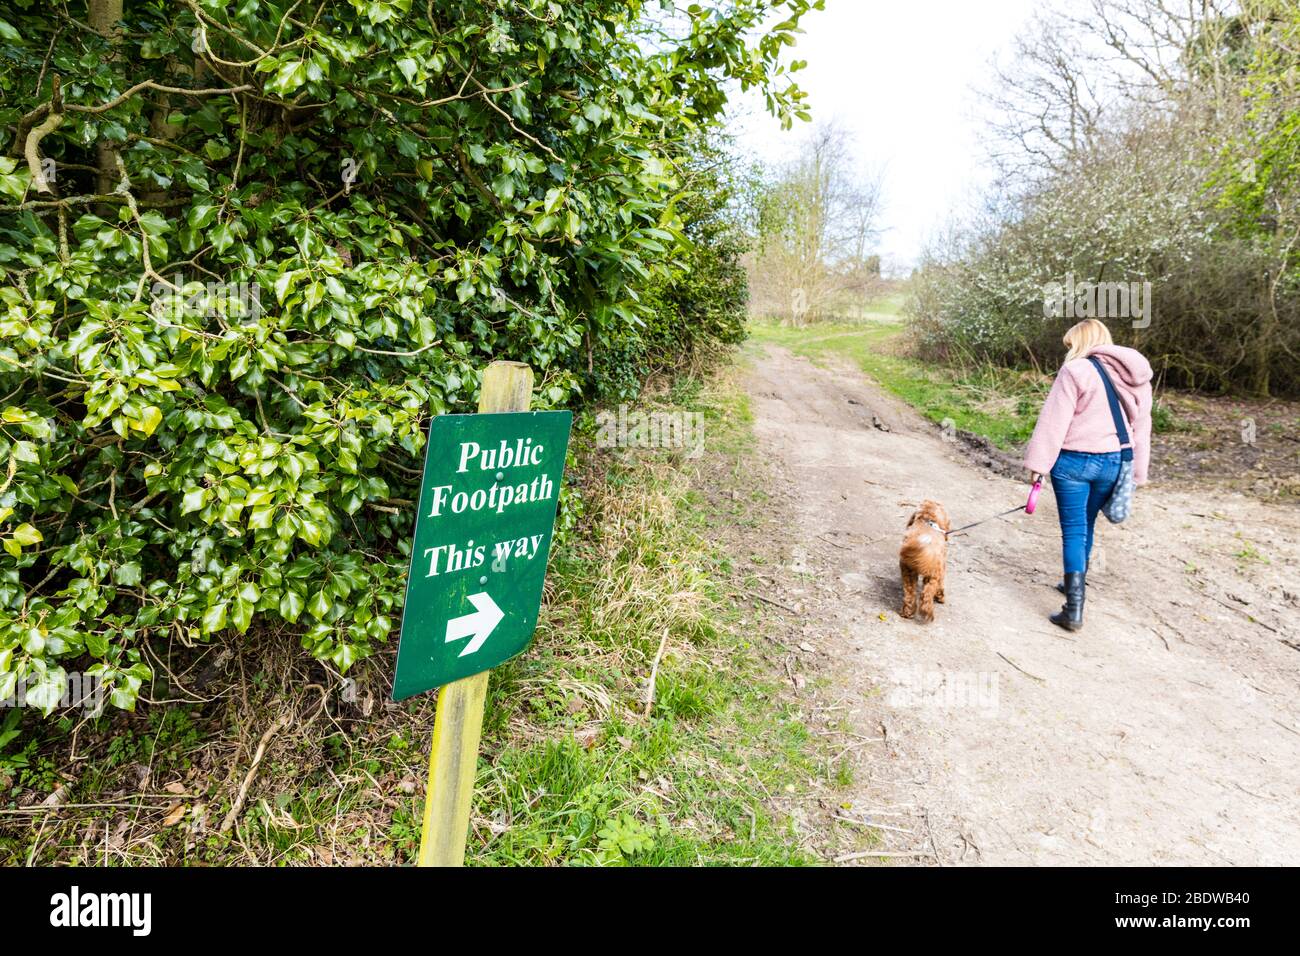 Camino público esta señal de camino, caminar camino público, senderos públicos, perro caminar, mujer con perro, mujer caminando perro, perro perro, perro caminar, perro caminar, perro caminar Foto de stock